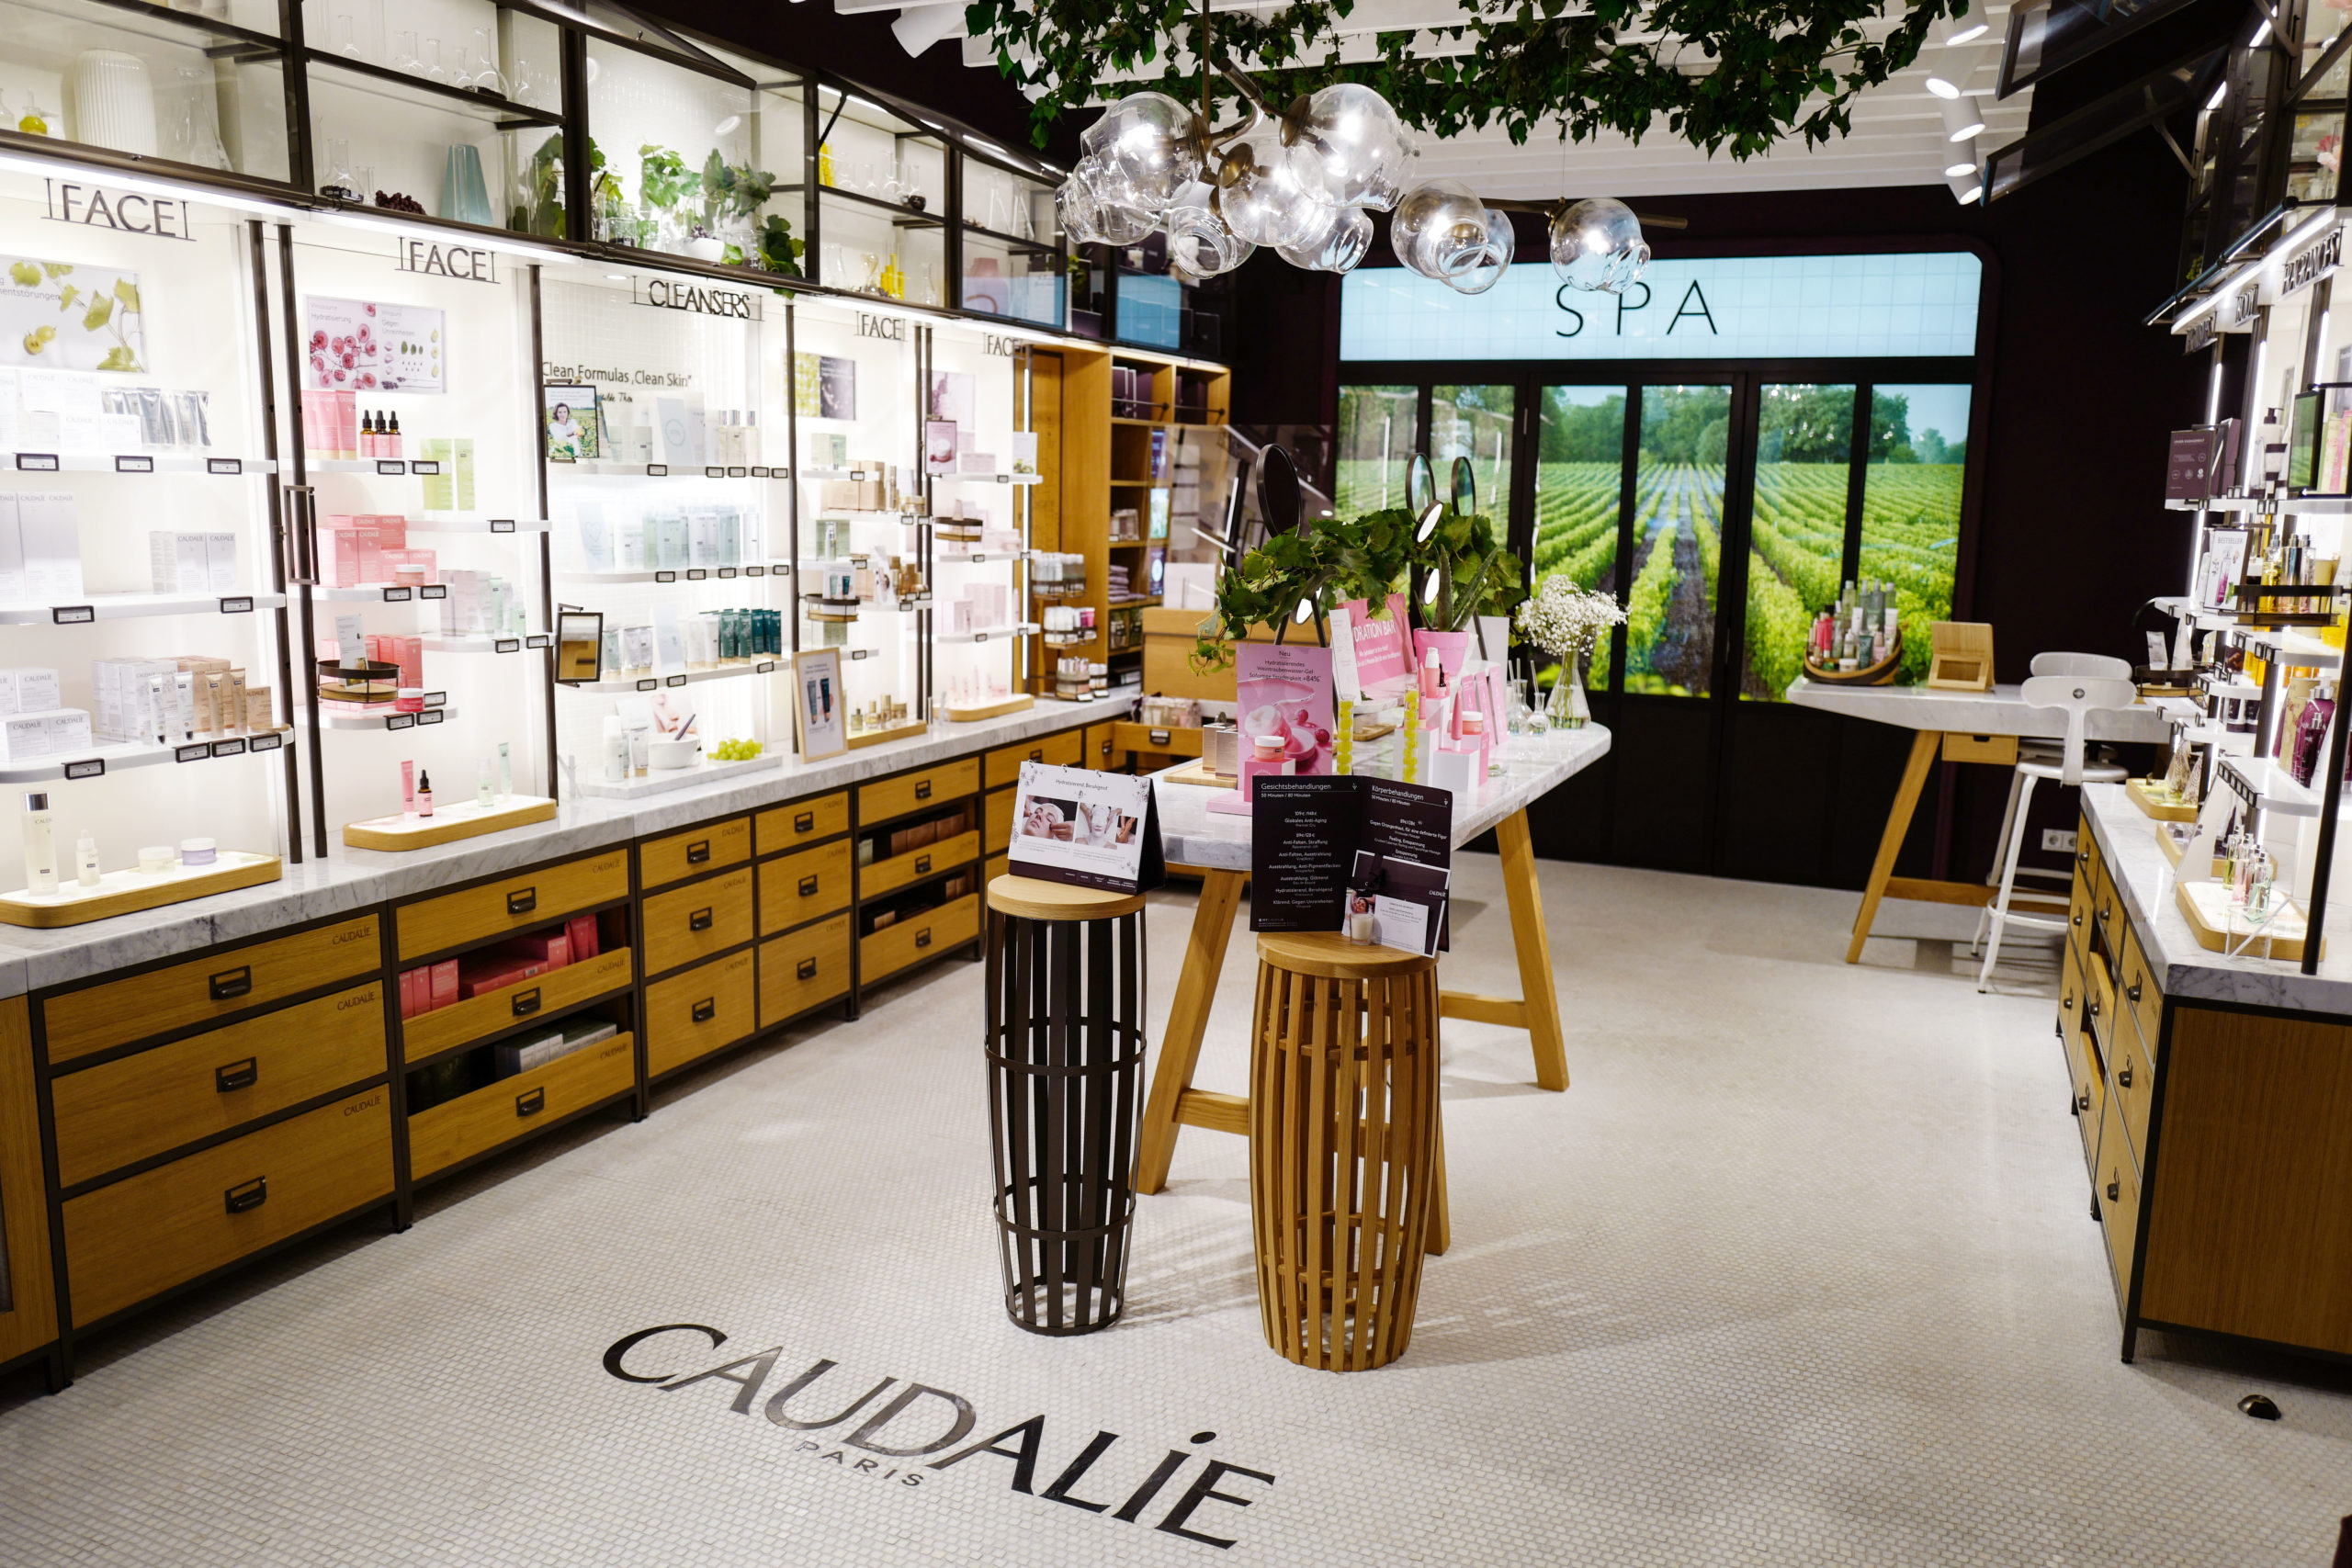 Im Innern des Stores erwarten euch die Produkte der französischen Naturkosmetikmarke sowie ein Spa Room für Gesichts- und Körperbehandlungen. Foto: Jeremy Möller